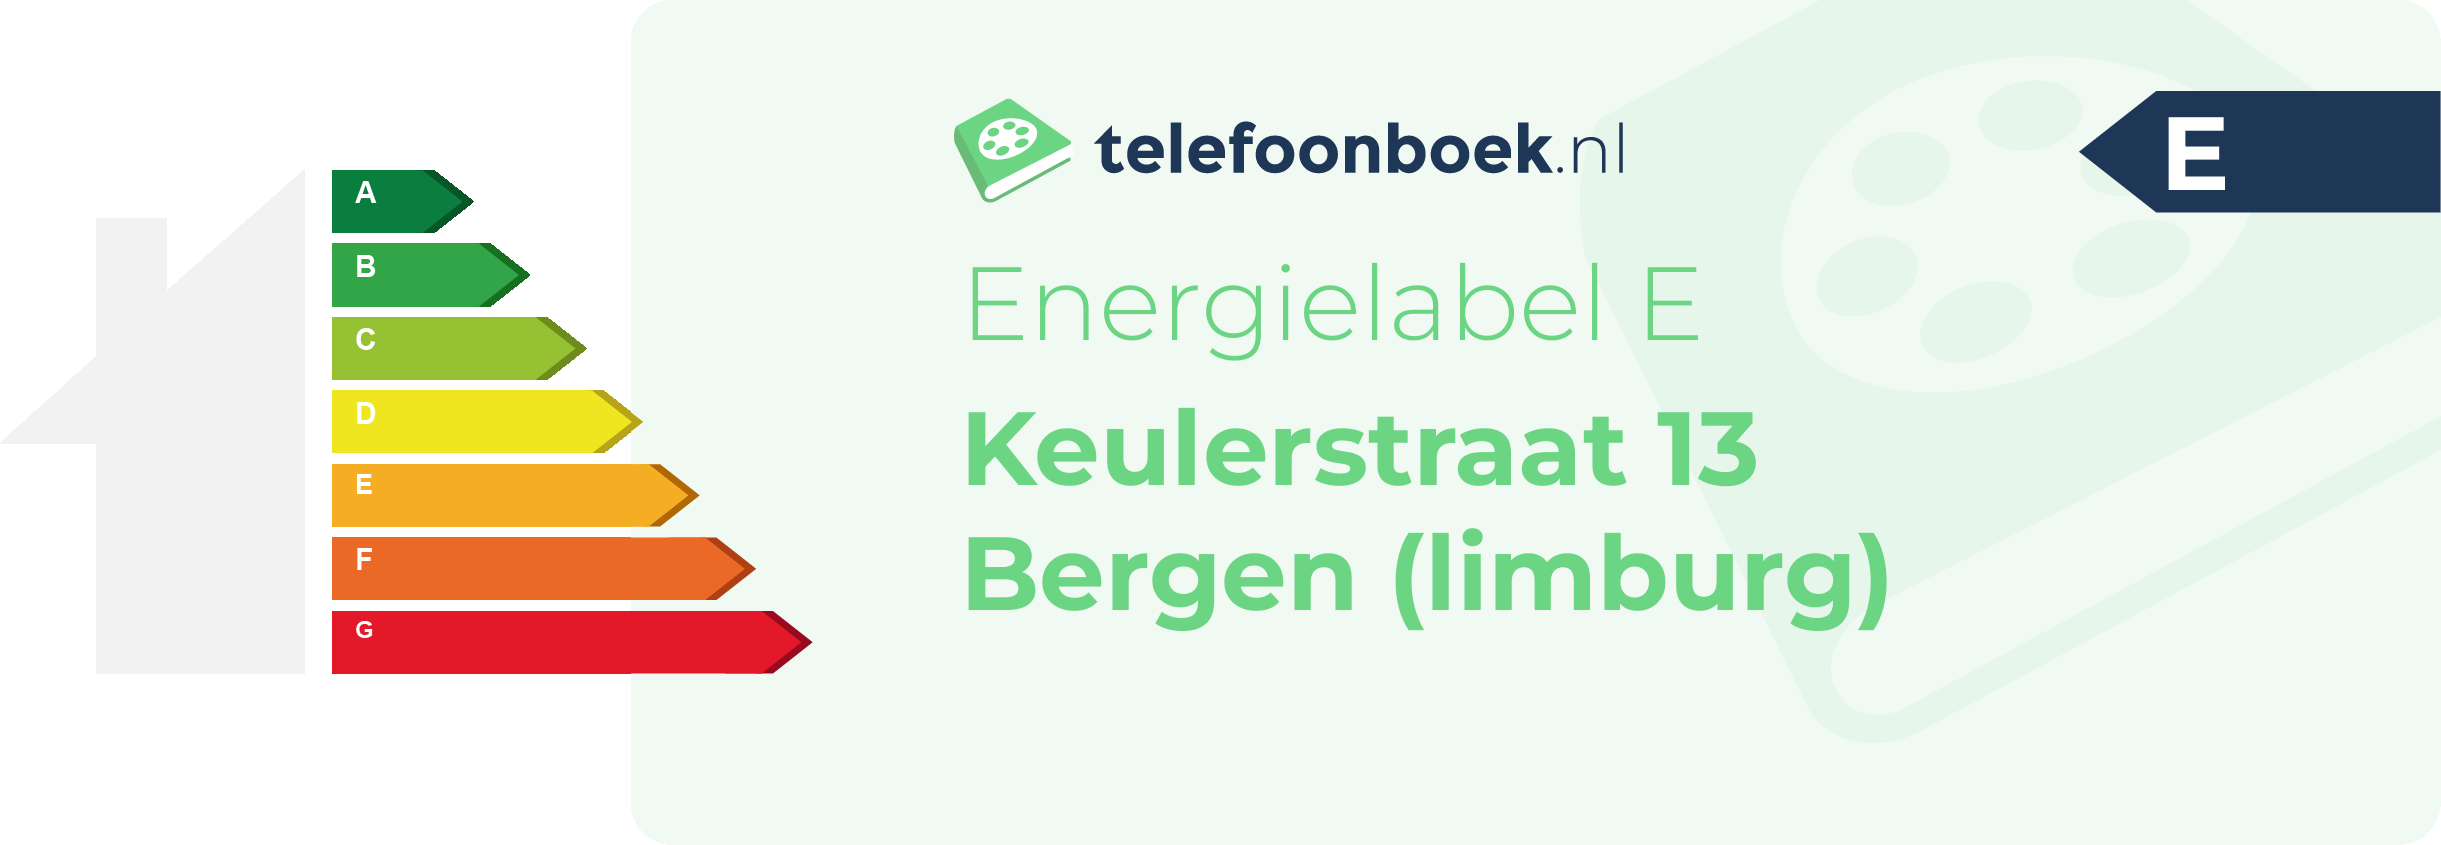 Energielabel Keulerstraat 13 Bergen (Limburg)